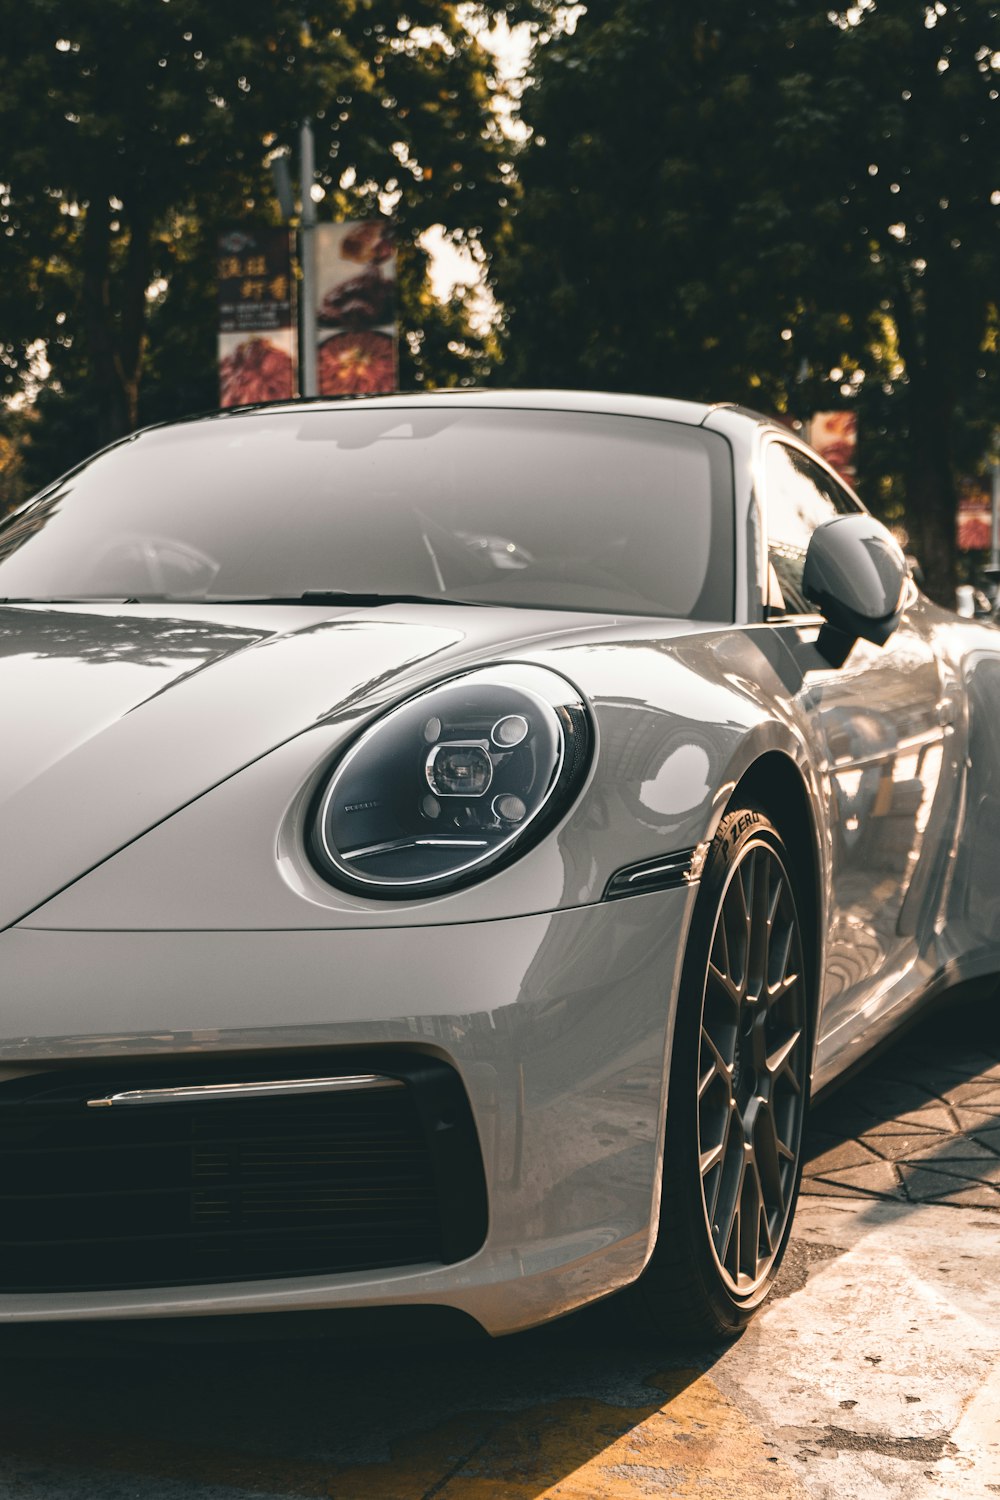 Porsche prata 911 estacionado na estrada durante o dia